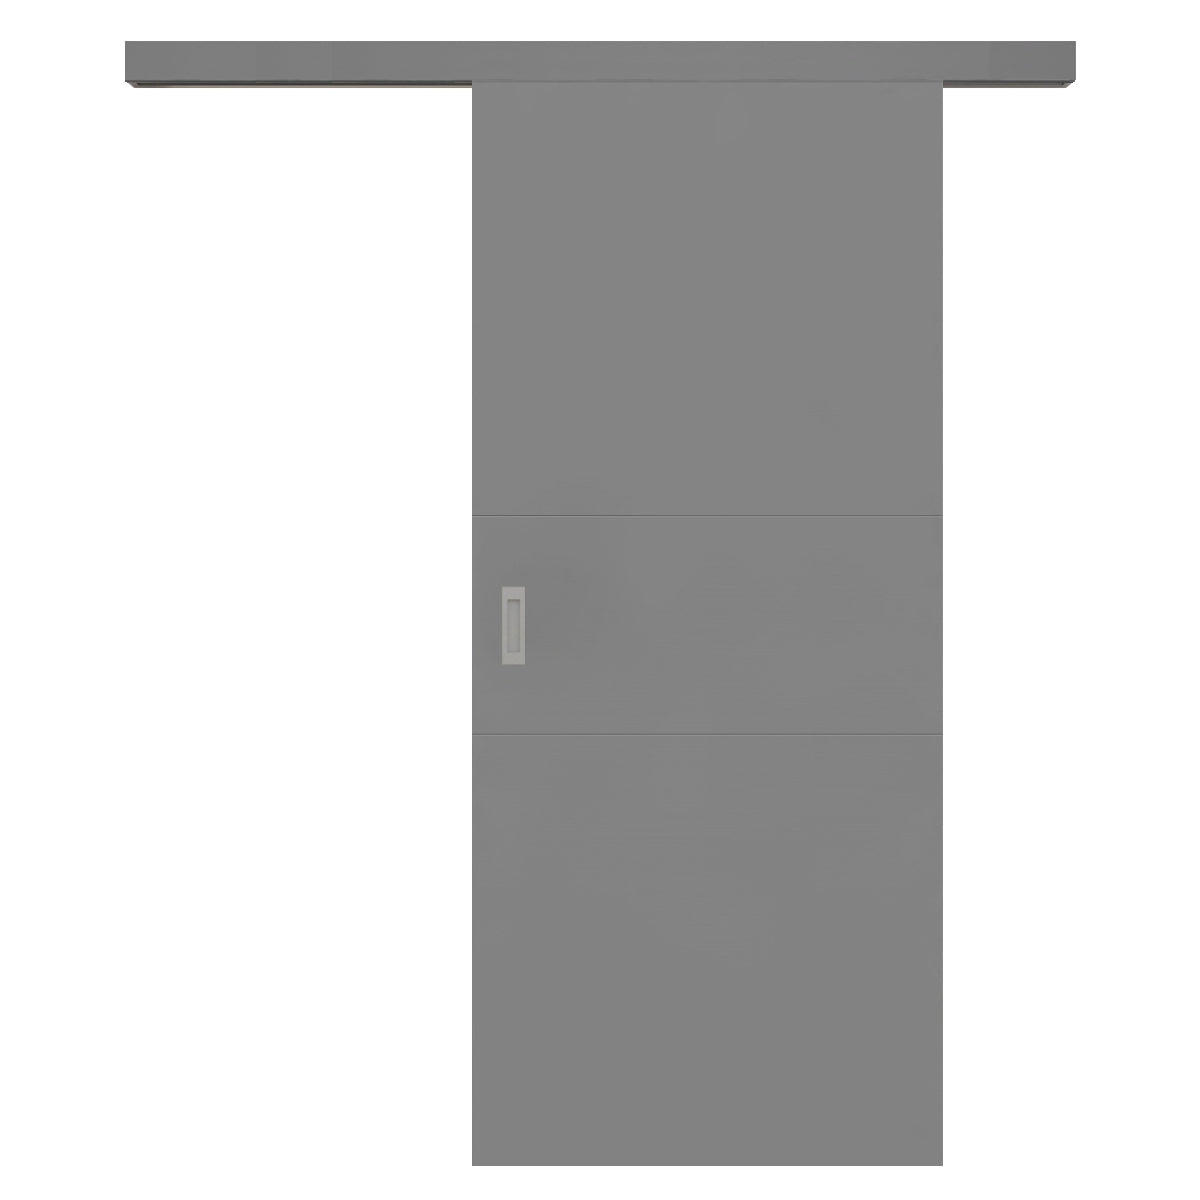 Schiebetür für Set mit grauem Laufkasten grau 2 Rillen quer - Modell Designtür Q27